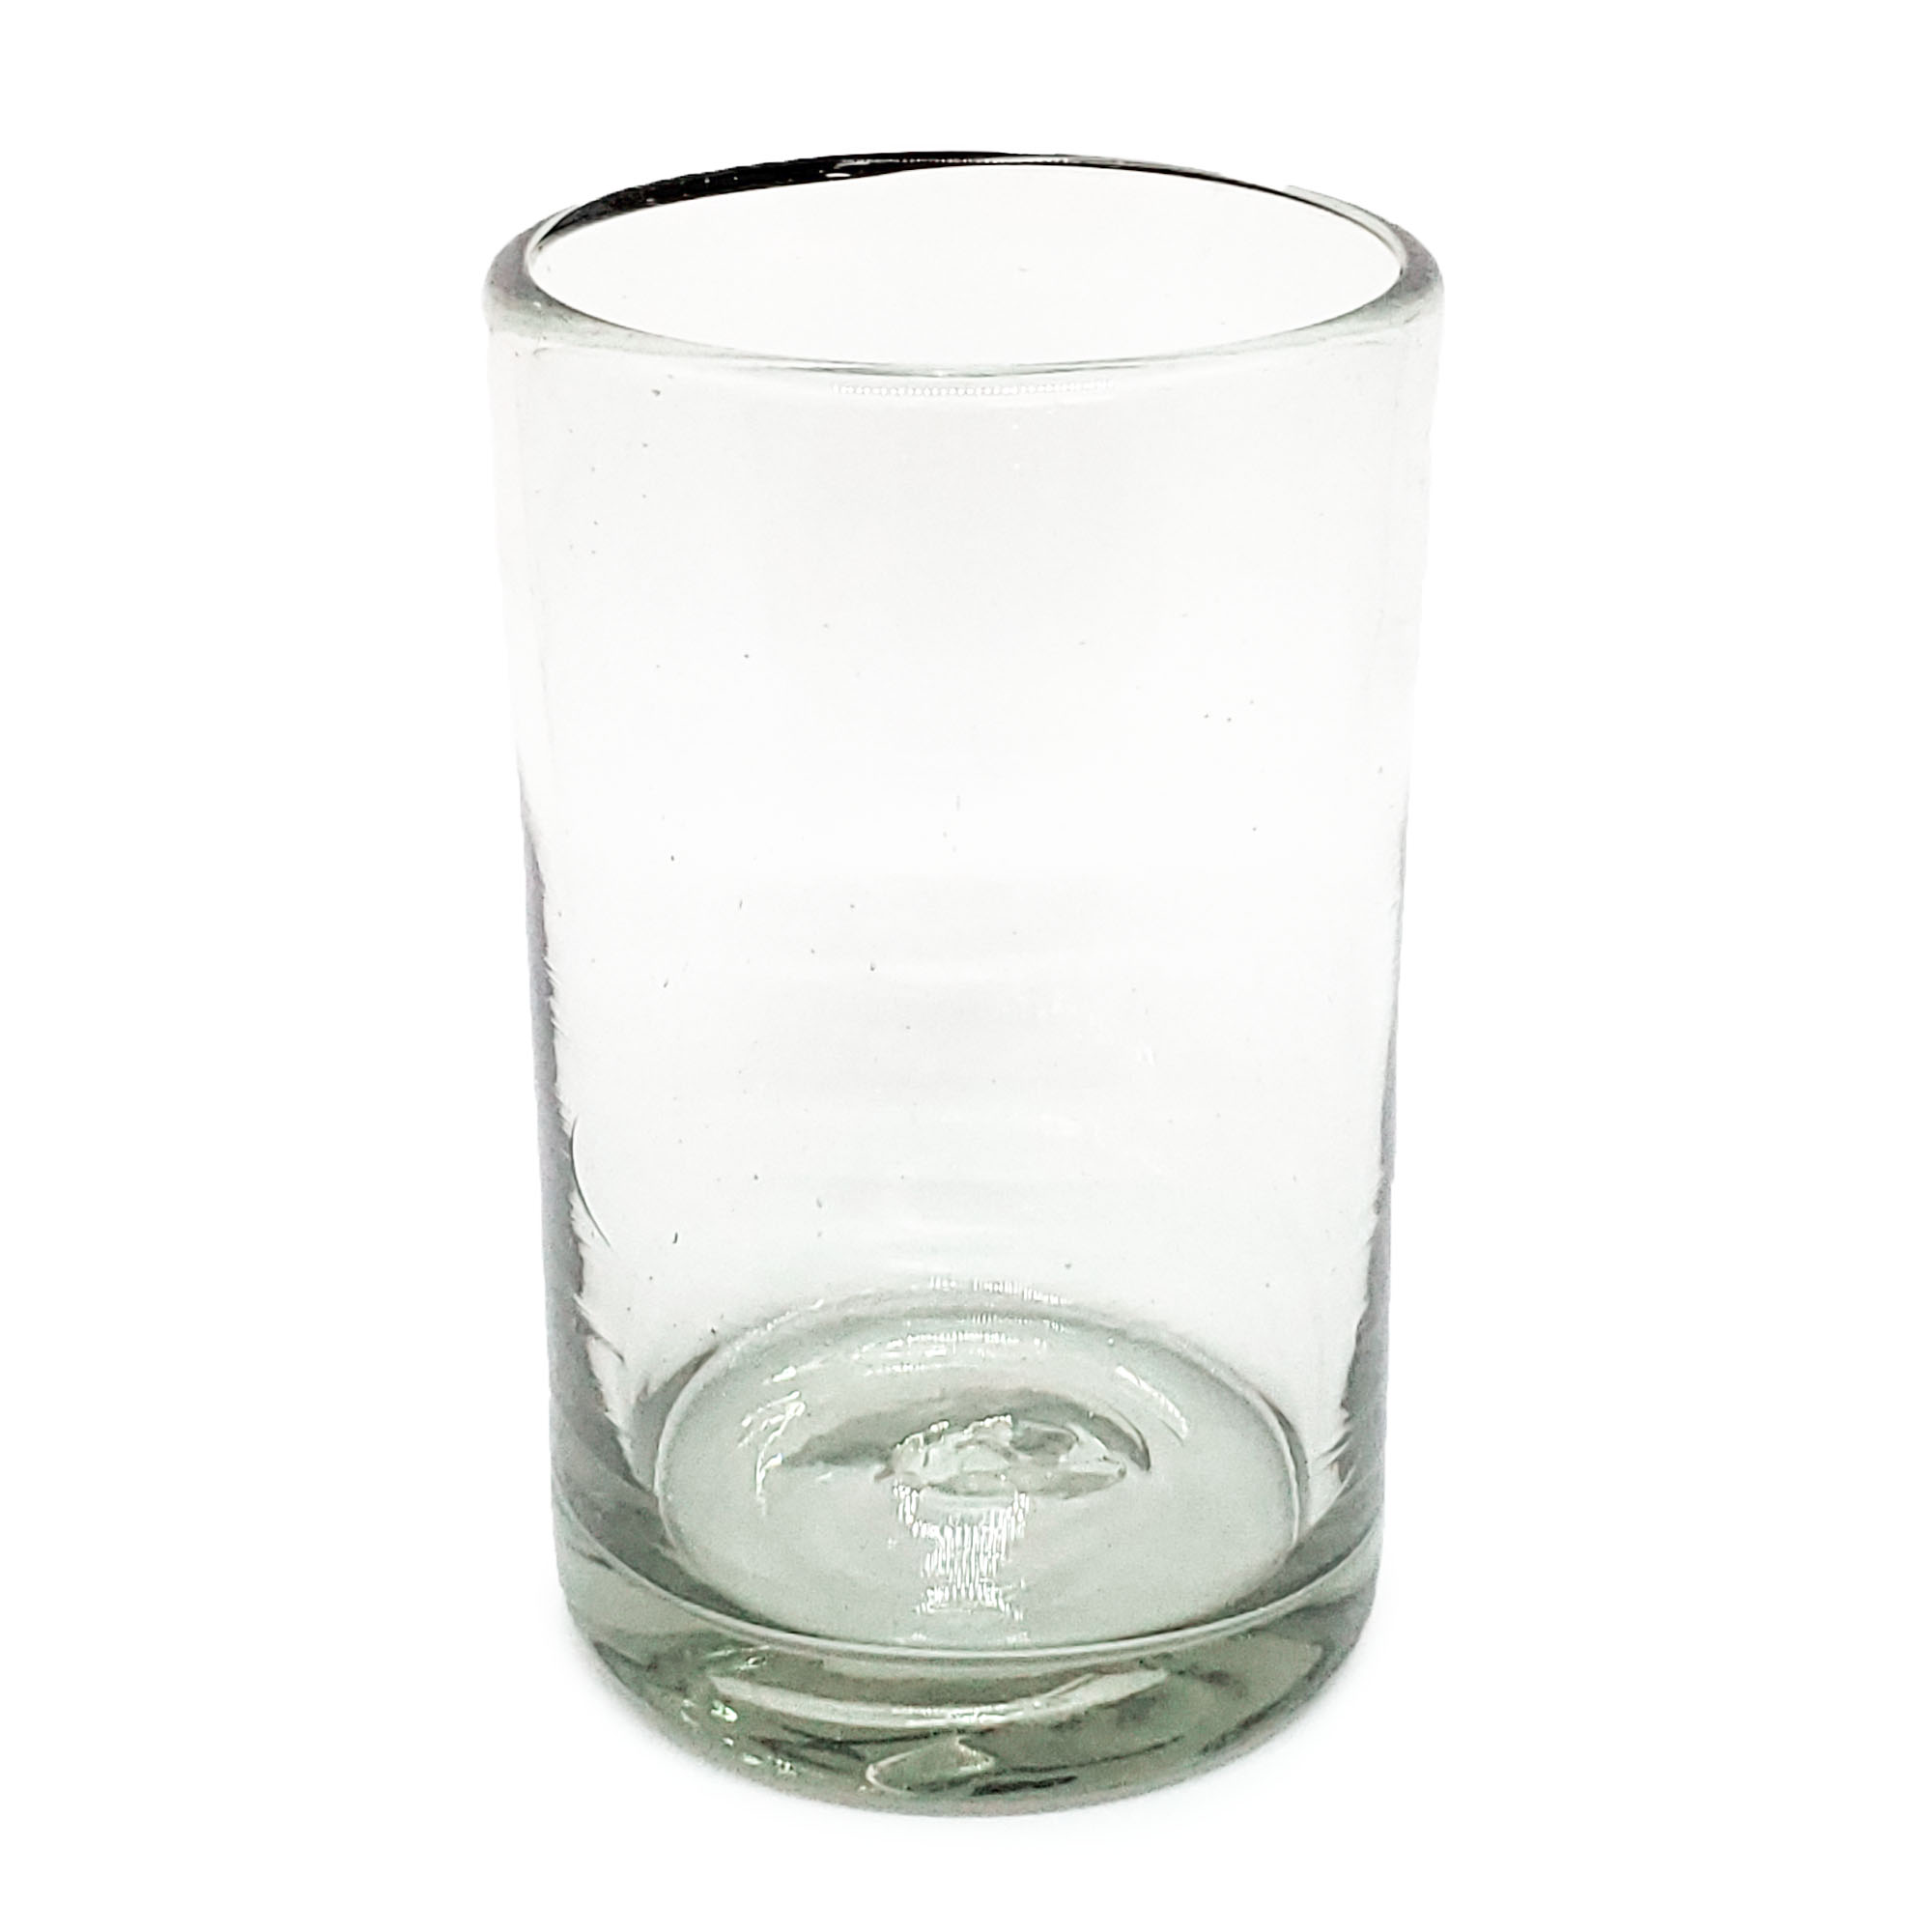 Vasos de Vidrio Soplado / Juego de 6 vasos grandes transparentes / Éstos artesanales vasos le darán un toque clásico a su bebida favorita.